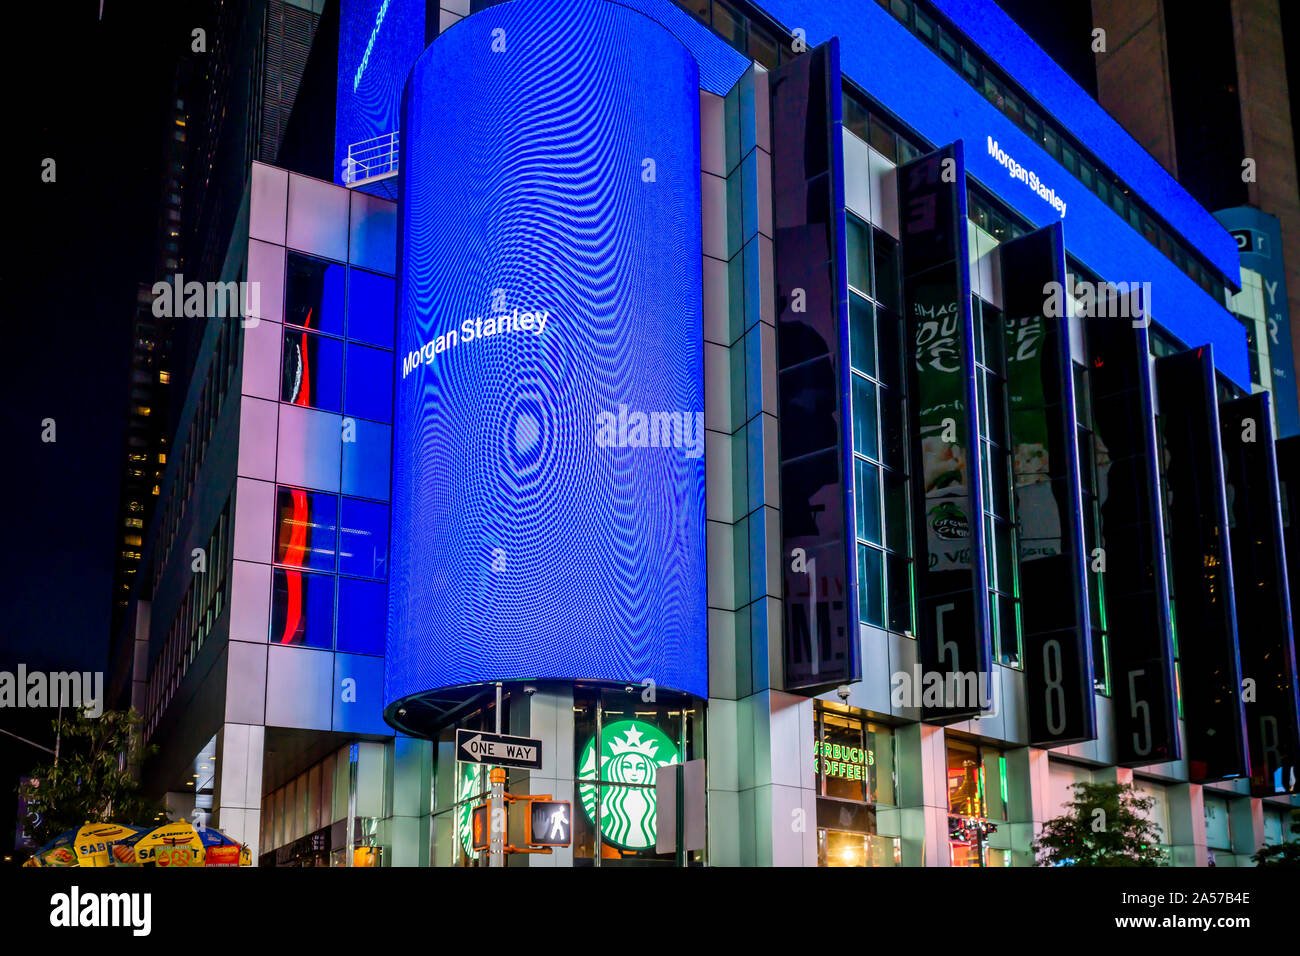 New York,NY/USA-Octobre 8, 2019 Morgan Stanley s'engage dans l'auto-promotion et affiche un moirage sur l'affichage numérique sur leurs capacités à New York le jeudi, Août 1, 2019. (© Richard B. Levine) Banque D'Images